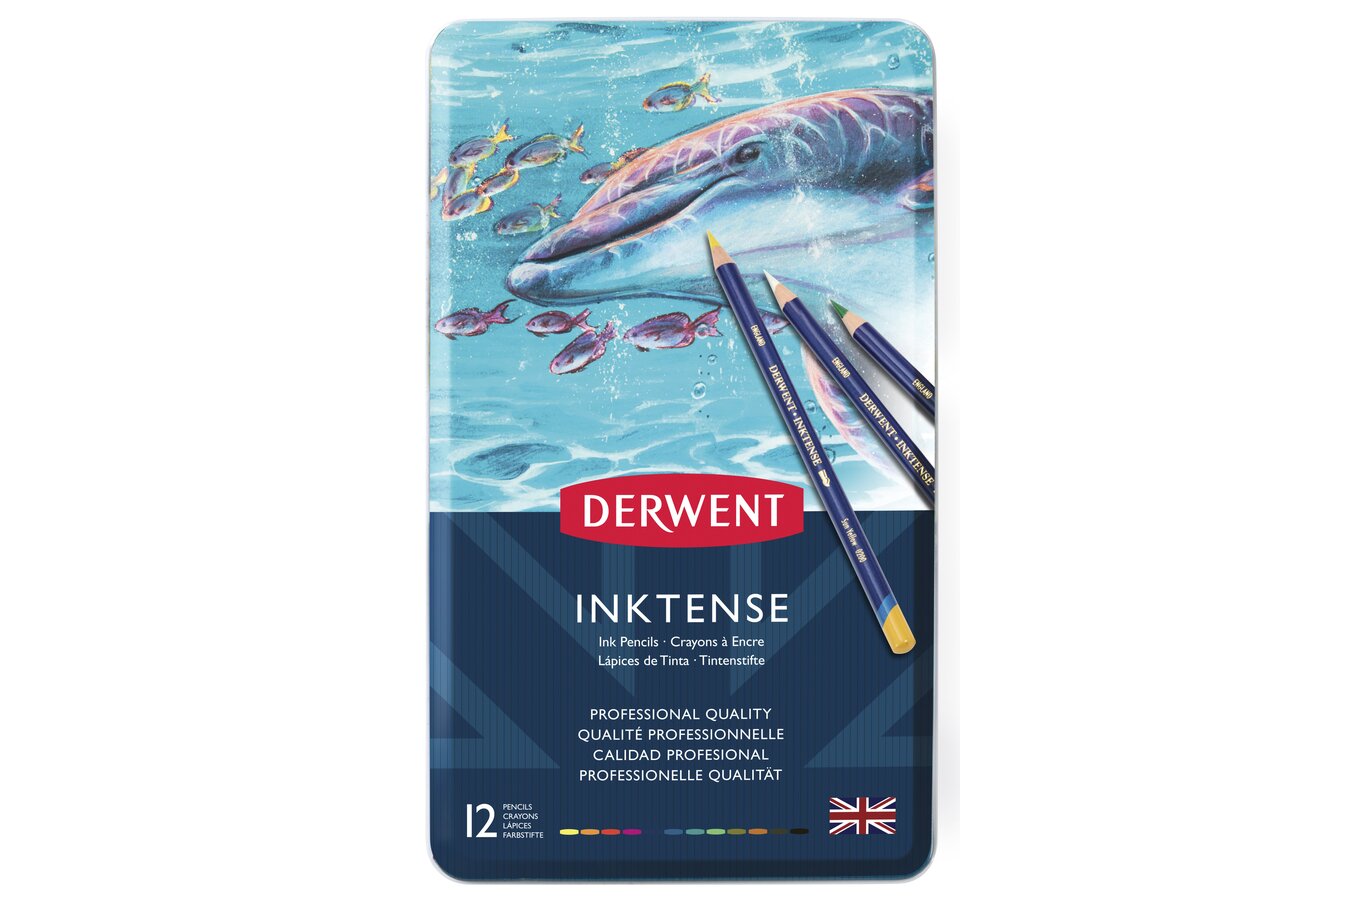 Derwent Inktense Water-Soluble Ink Pencil 72 Set